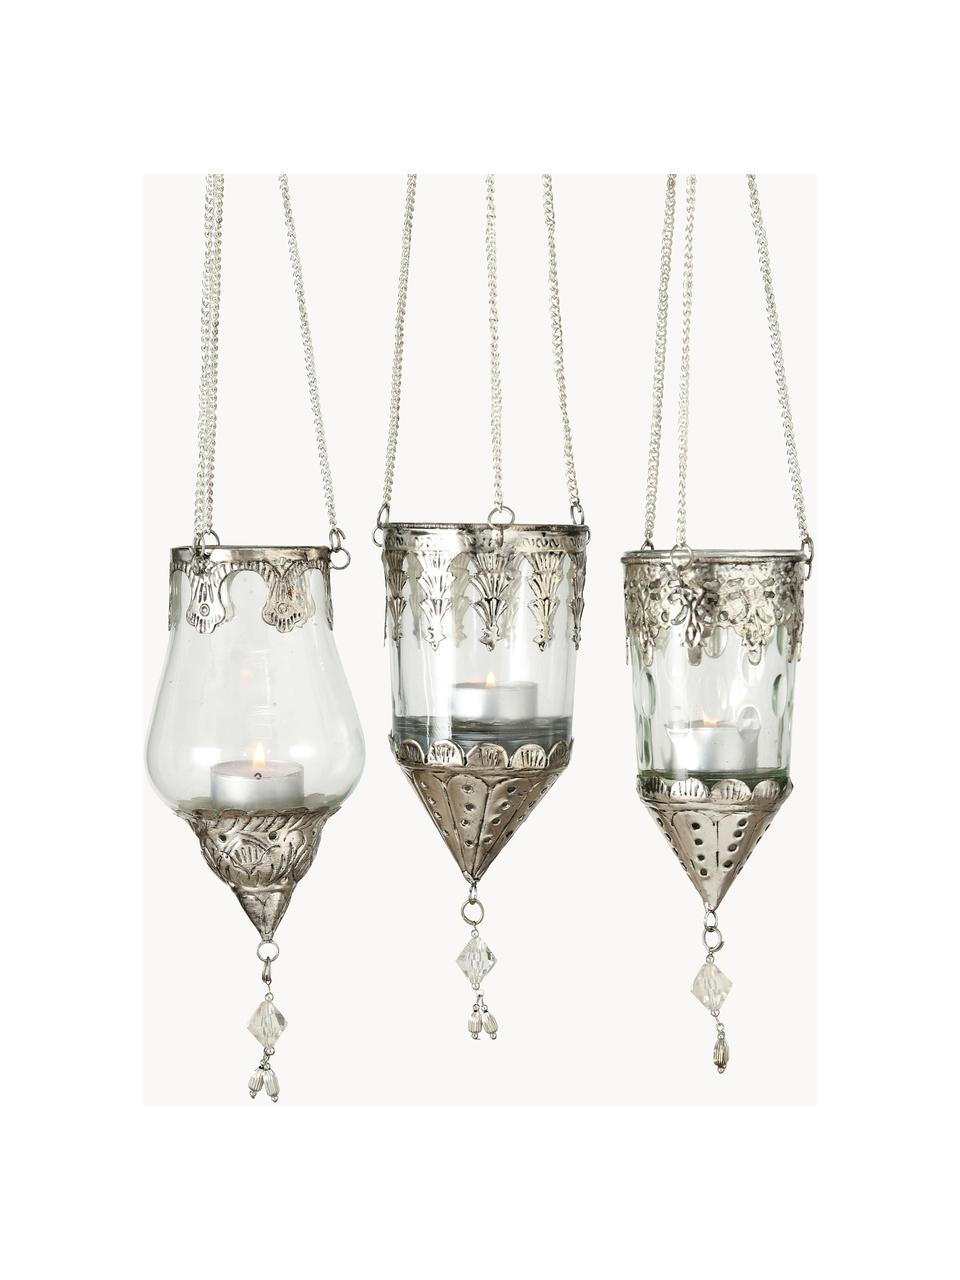 Windlichtenset Cosa, 3-delig, Windlicht: glas, Decoratie: metaal, Transparant, zilverkleurig, Ø 9 x H 23 cm